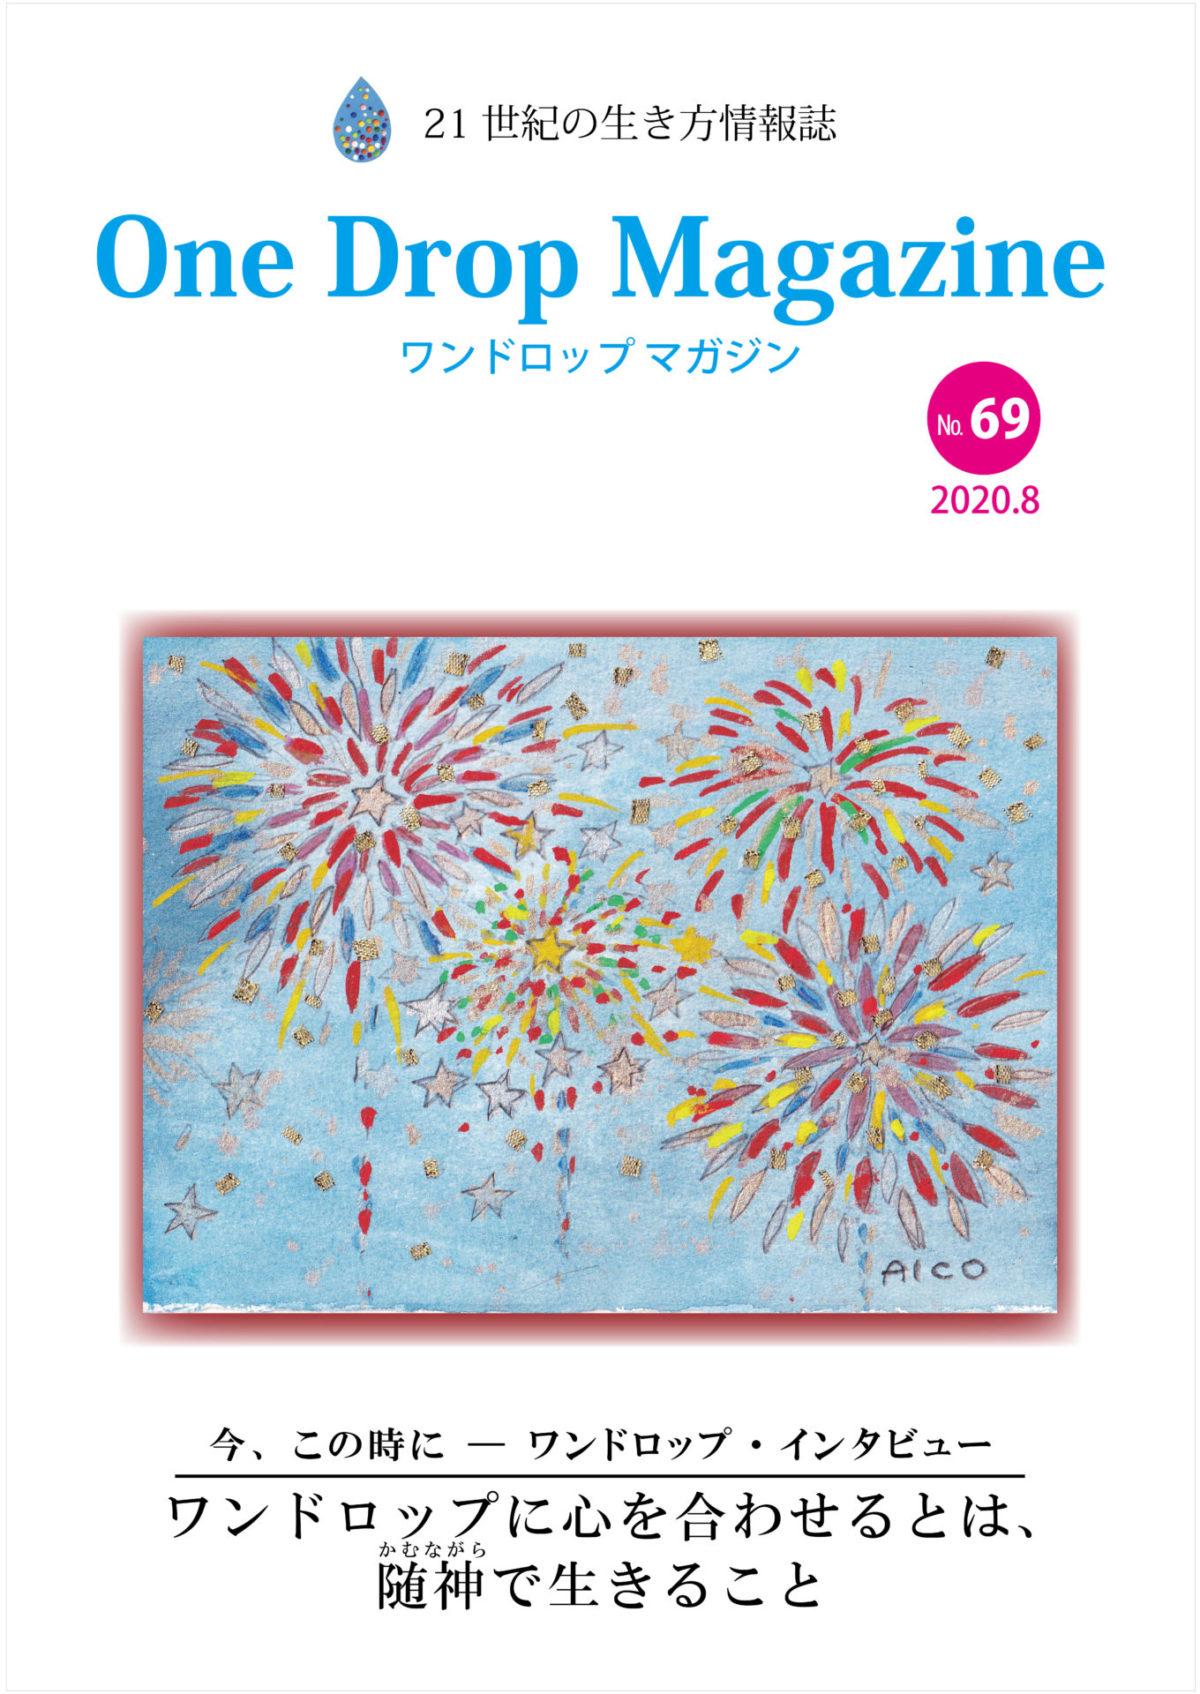 One Drop Magazine 2020年8月号No.69 発行いたしました。